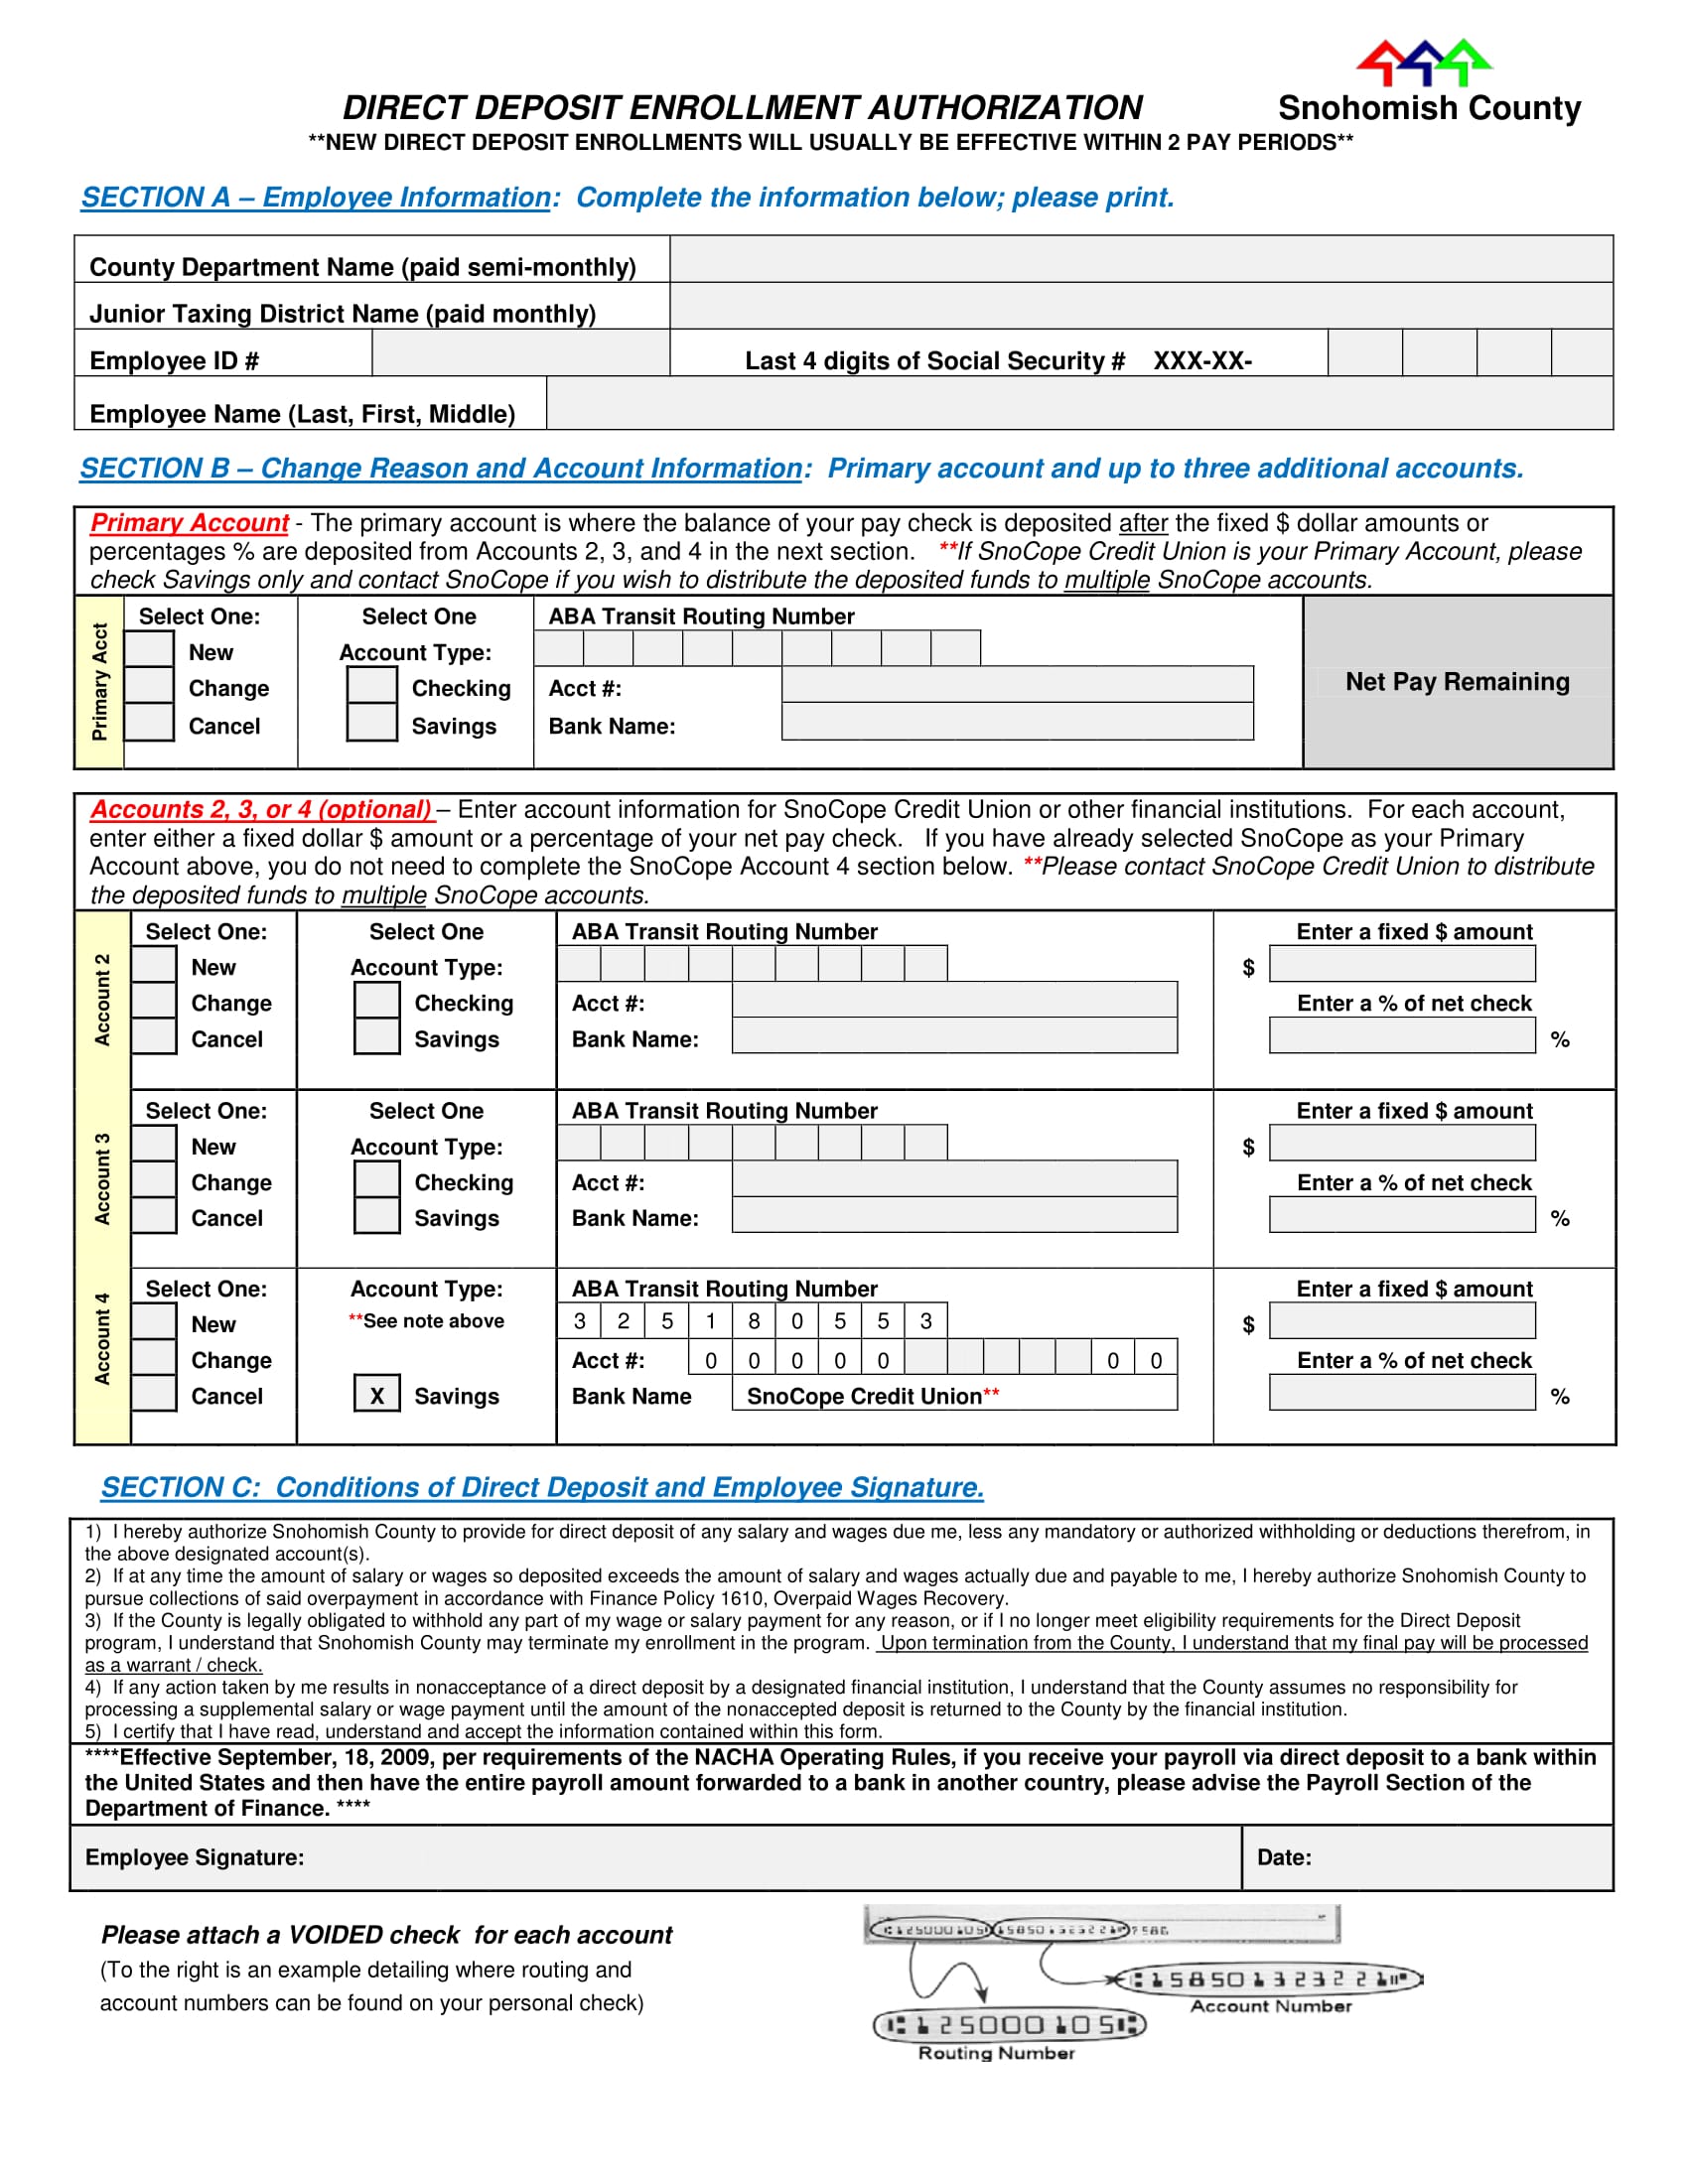 direct deposit enrollment authorization form 1